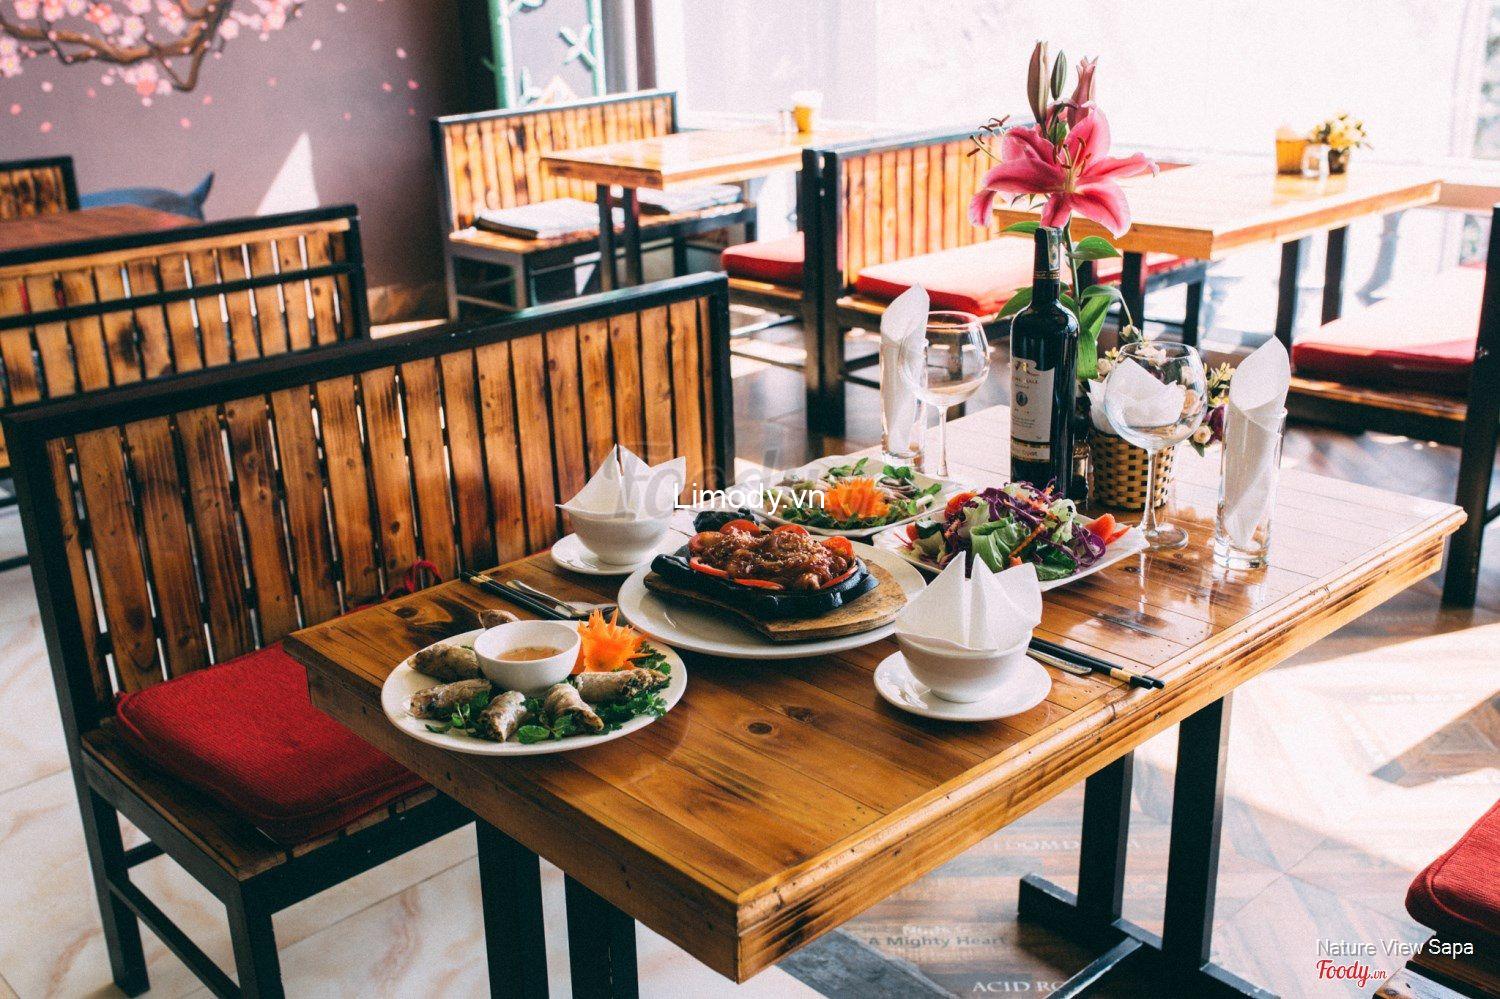 Ăn gì ở Sapa? Top 30 Món ngon + nhà hàng quán ăn ngon Sapa Lào Cai